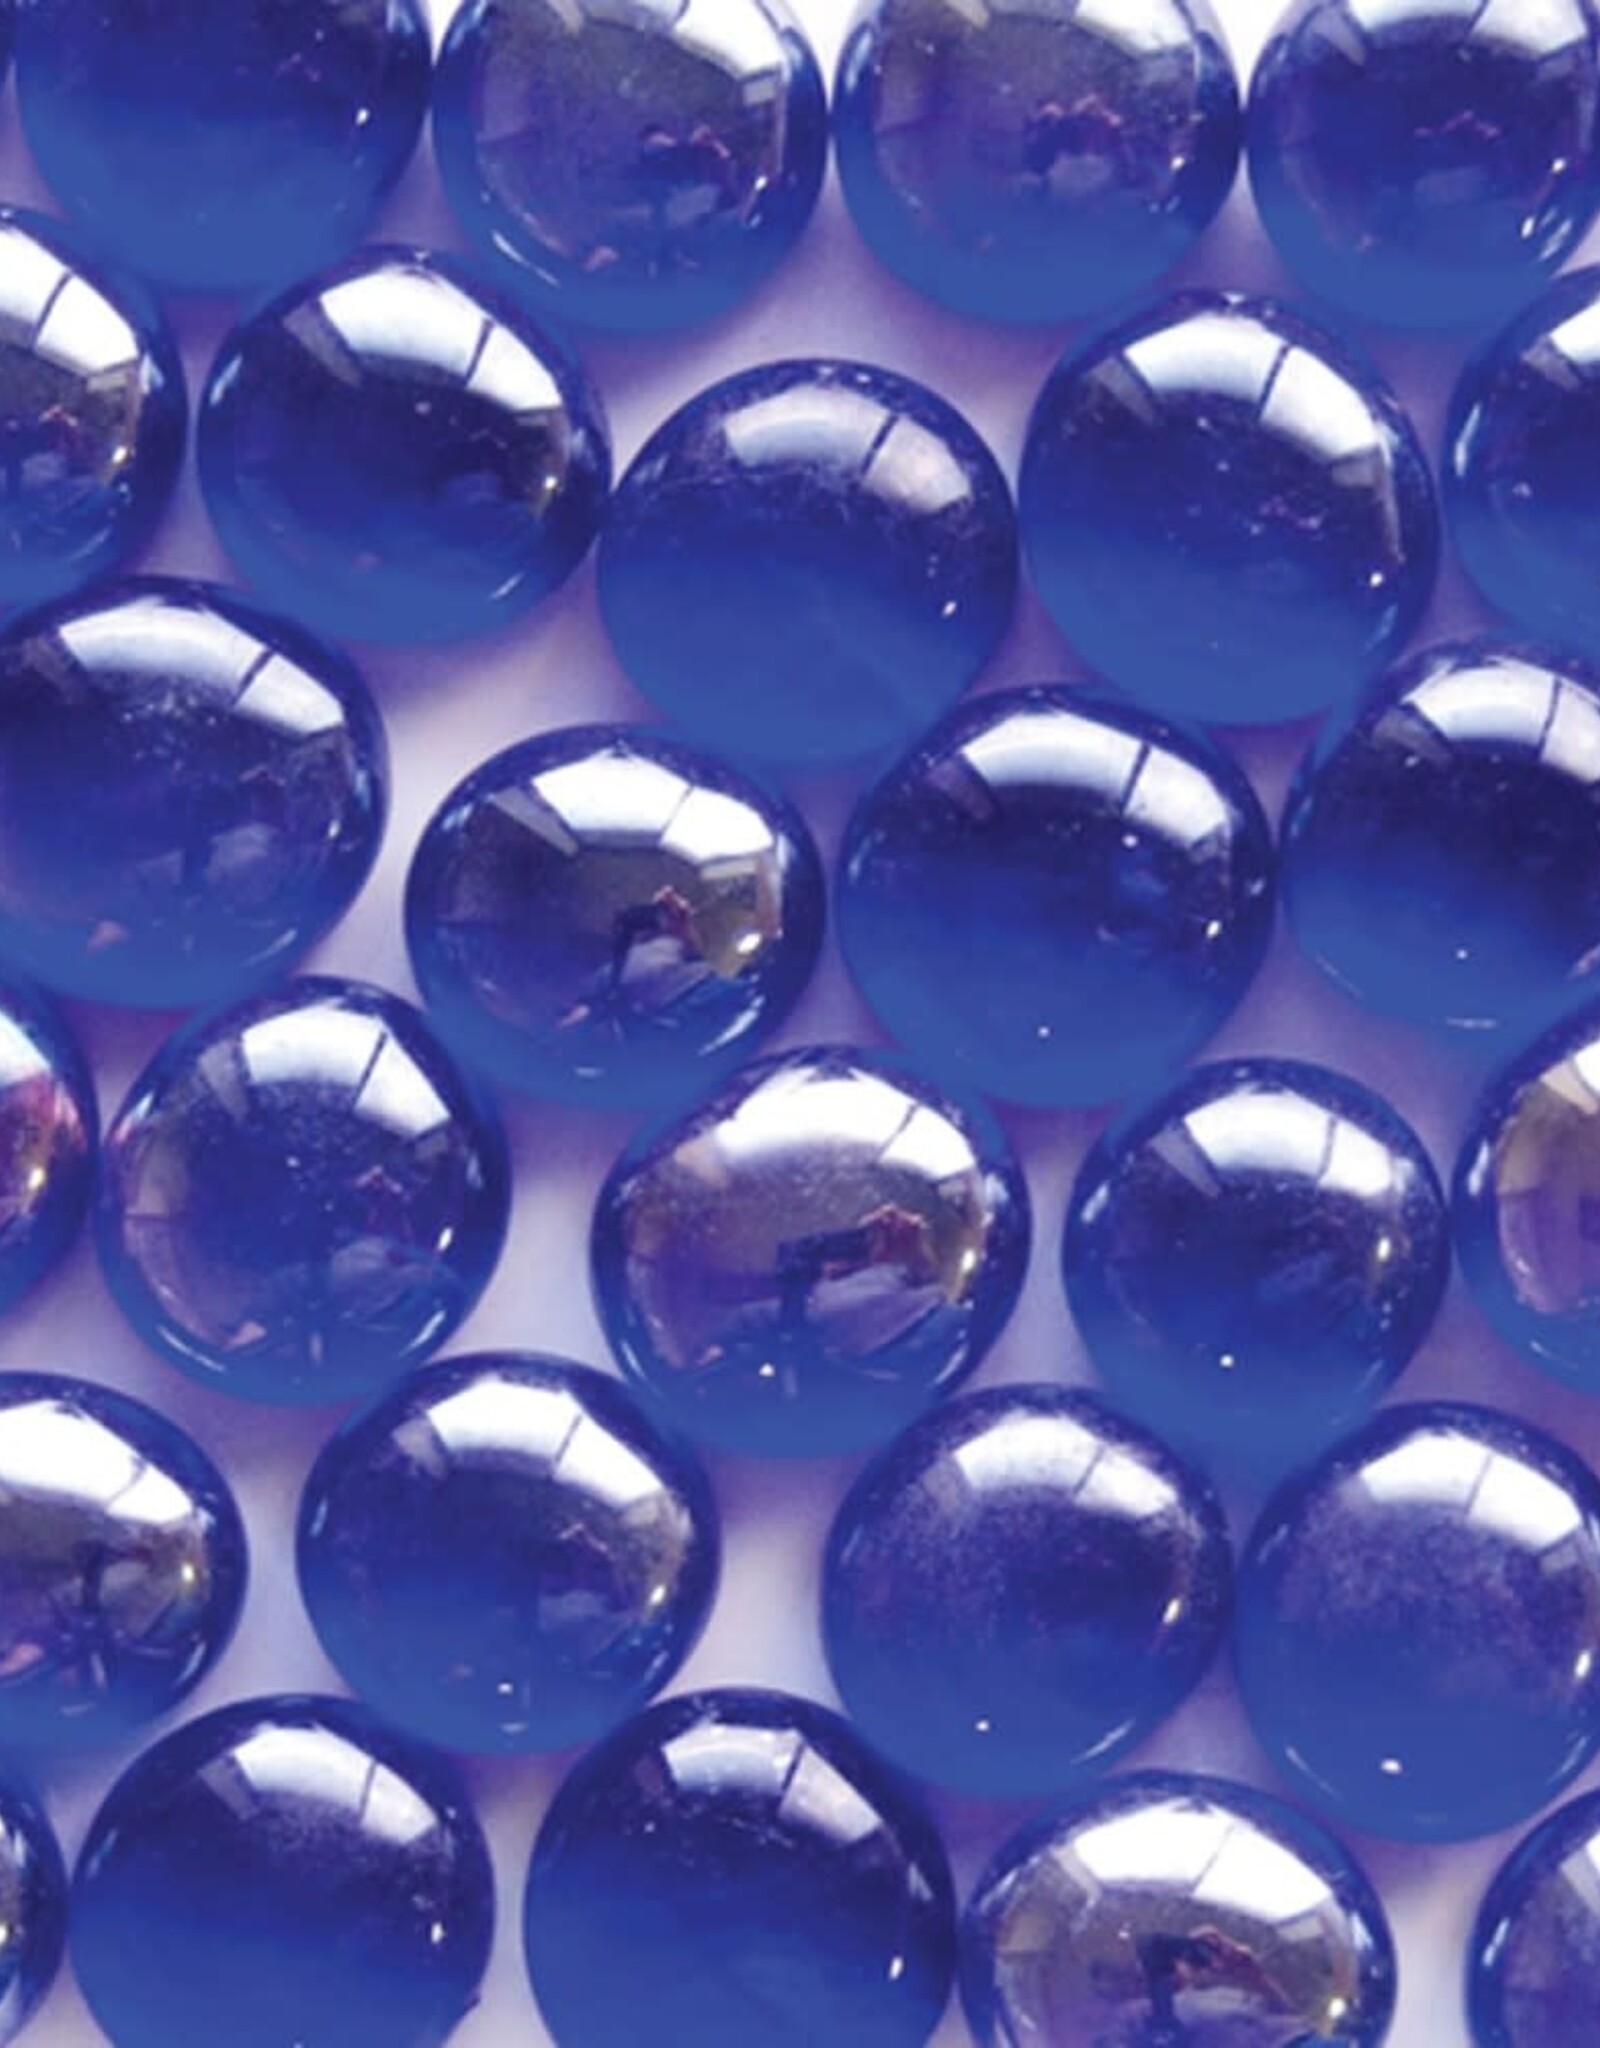 PANACEA PRODUCTS CORP. Panacea Gems Clear Cobalt Blue Lustre 12oz